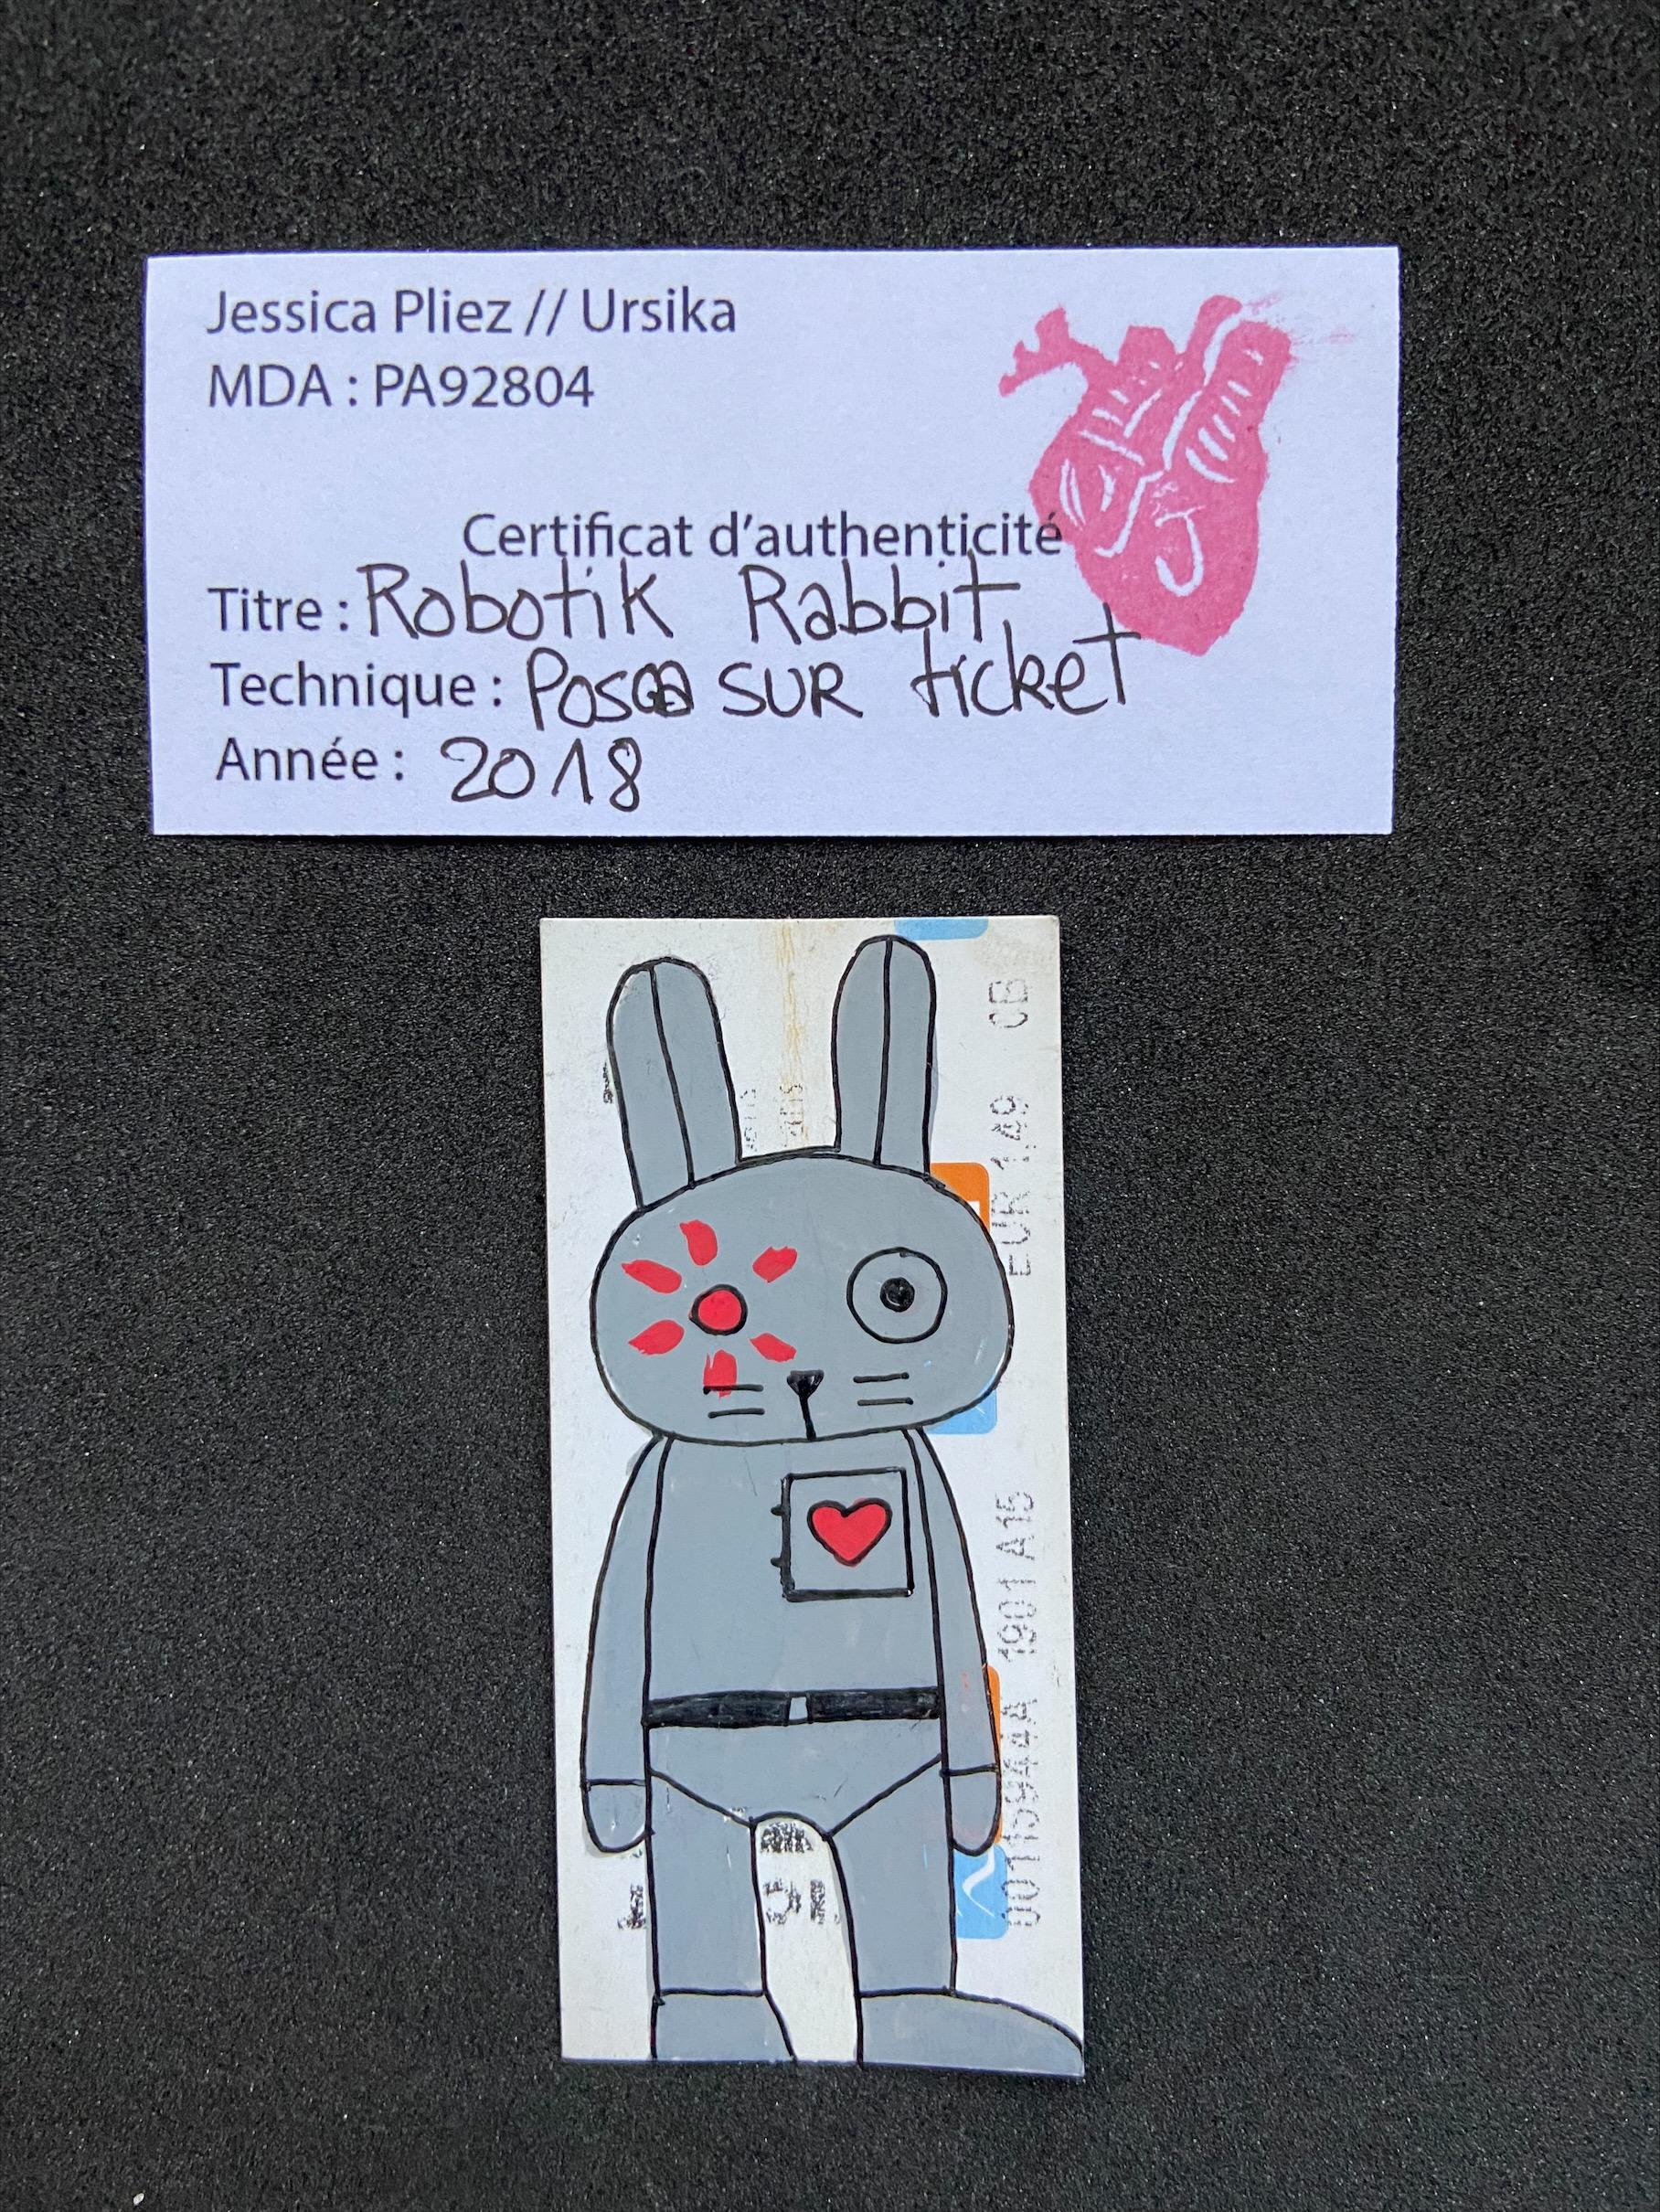 Robotik Rabbit - Jessica Pliez (Ursika) 3